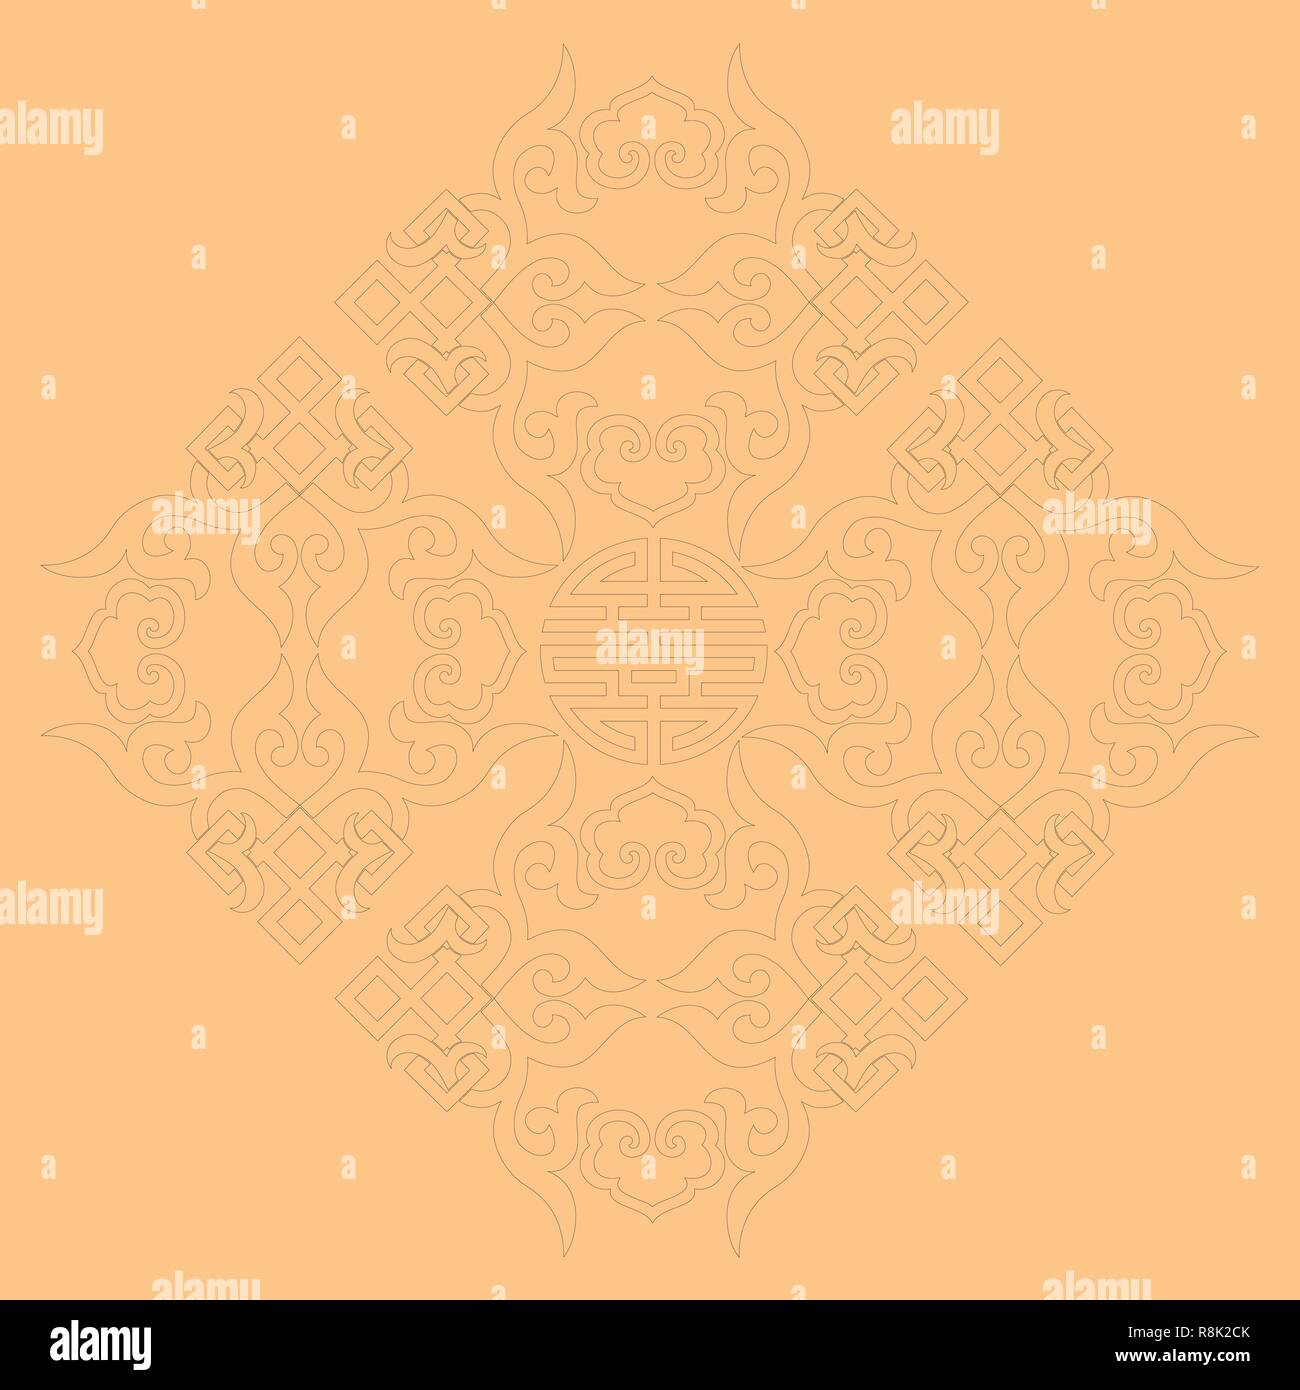 Vektor orientalisch chinesisches Ornament asiatische Traditionelle Muster floral vintage Element schneiden Silhouette ornament Zentralasien applique Arbeit für t-shirt mongolische Ornament. Laserschneiden Stock Vektor